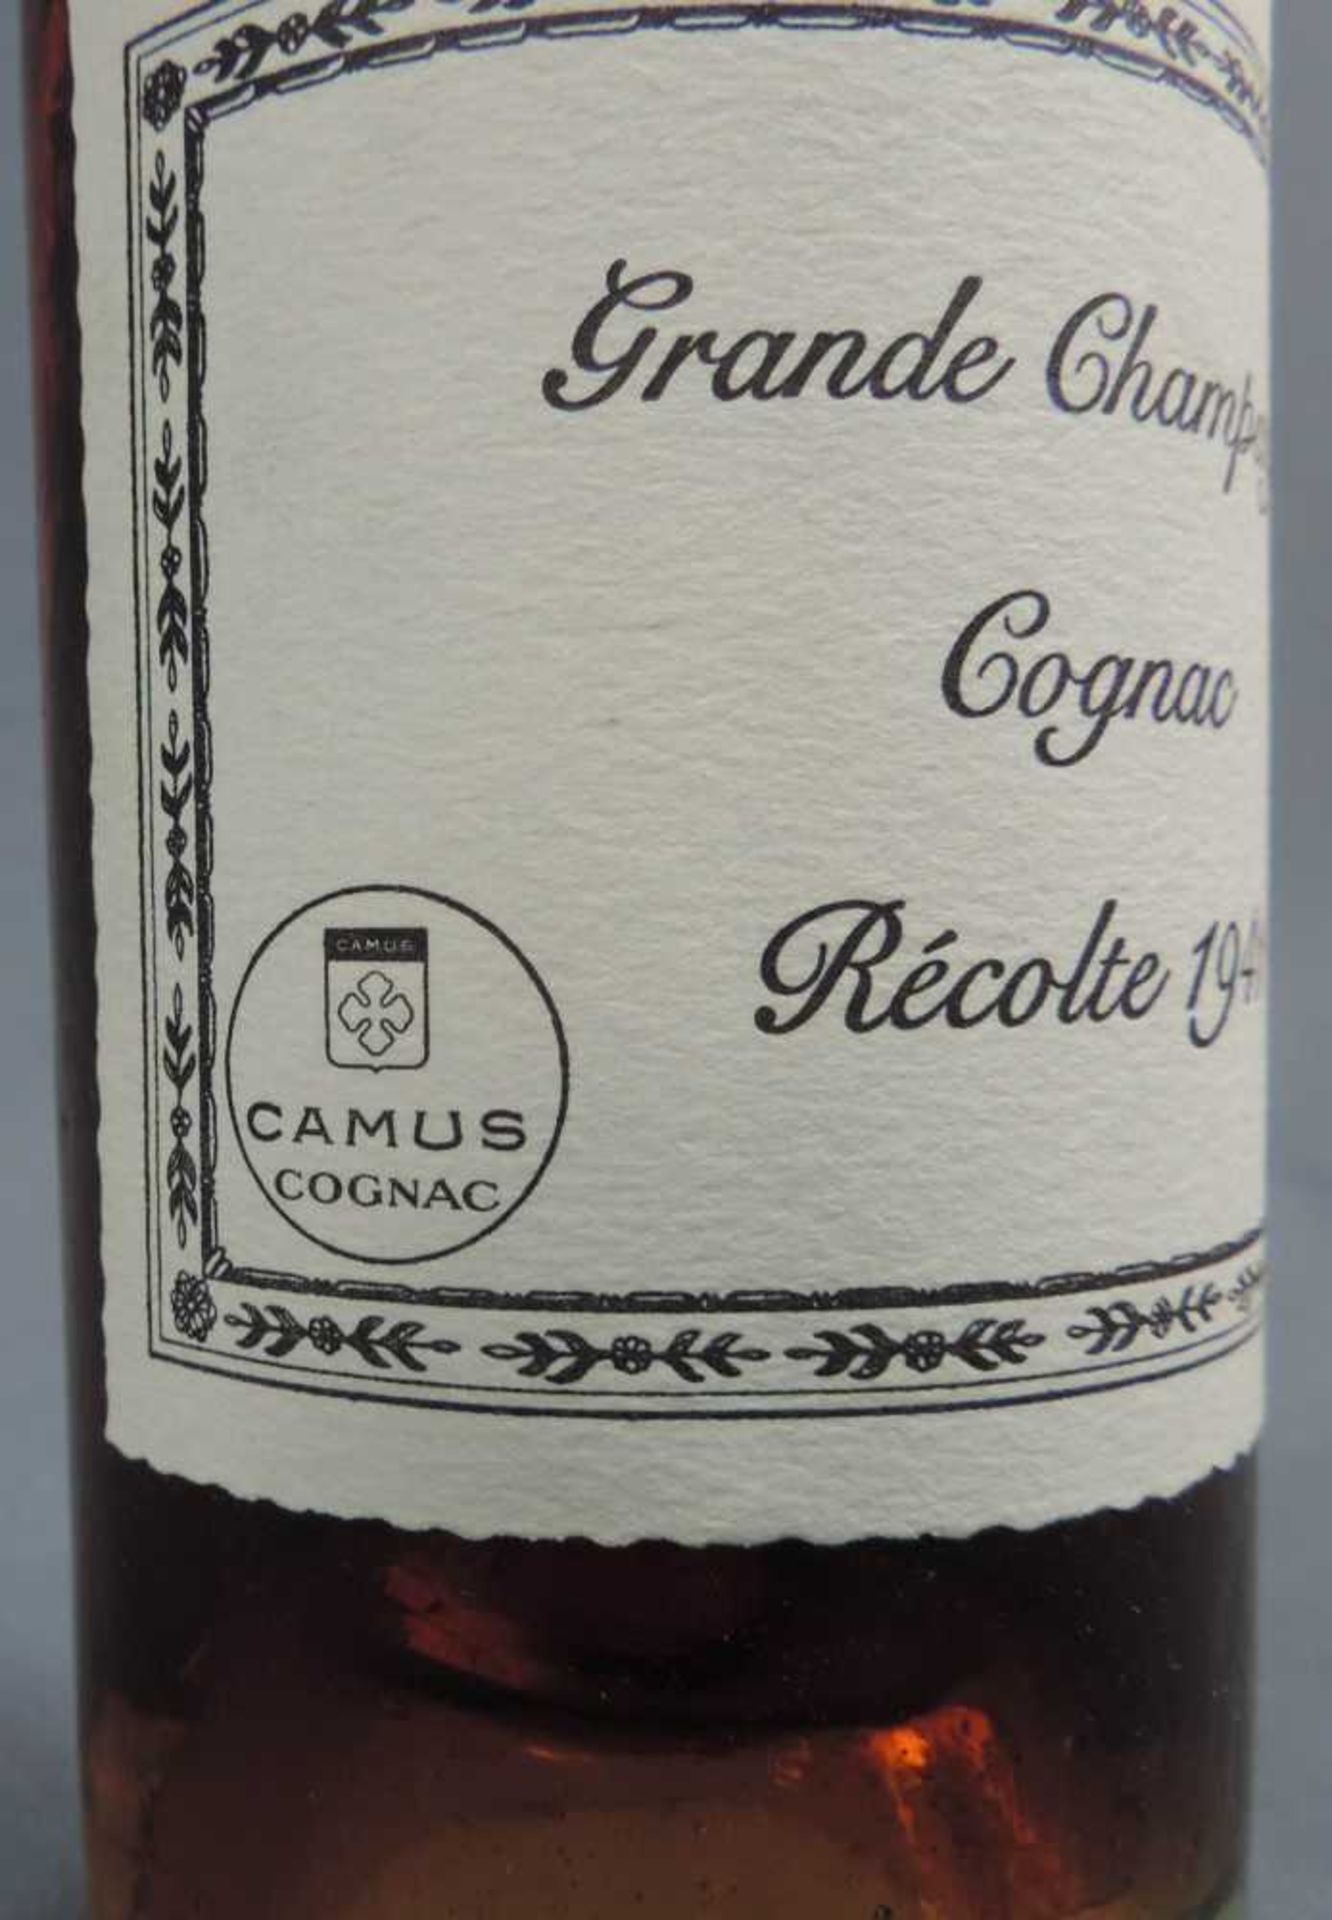 Camus Cognac Grande Champagne Cognac Récolte 1941. 70cl. Camus Cognac Grande Champagne Cognac - Image 2 of 5